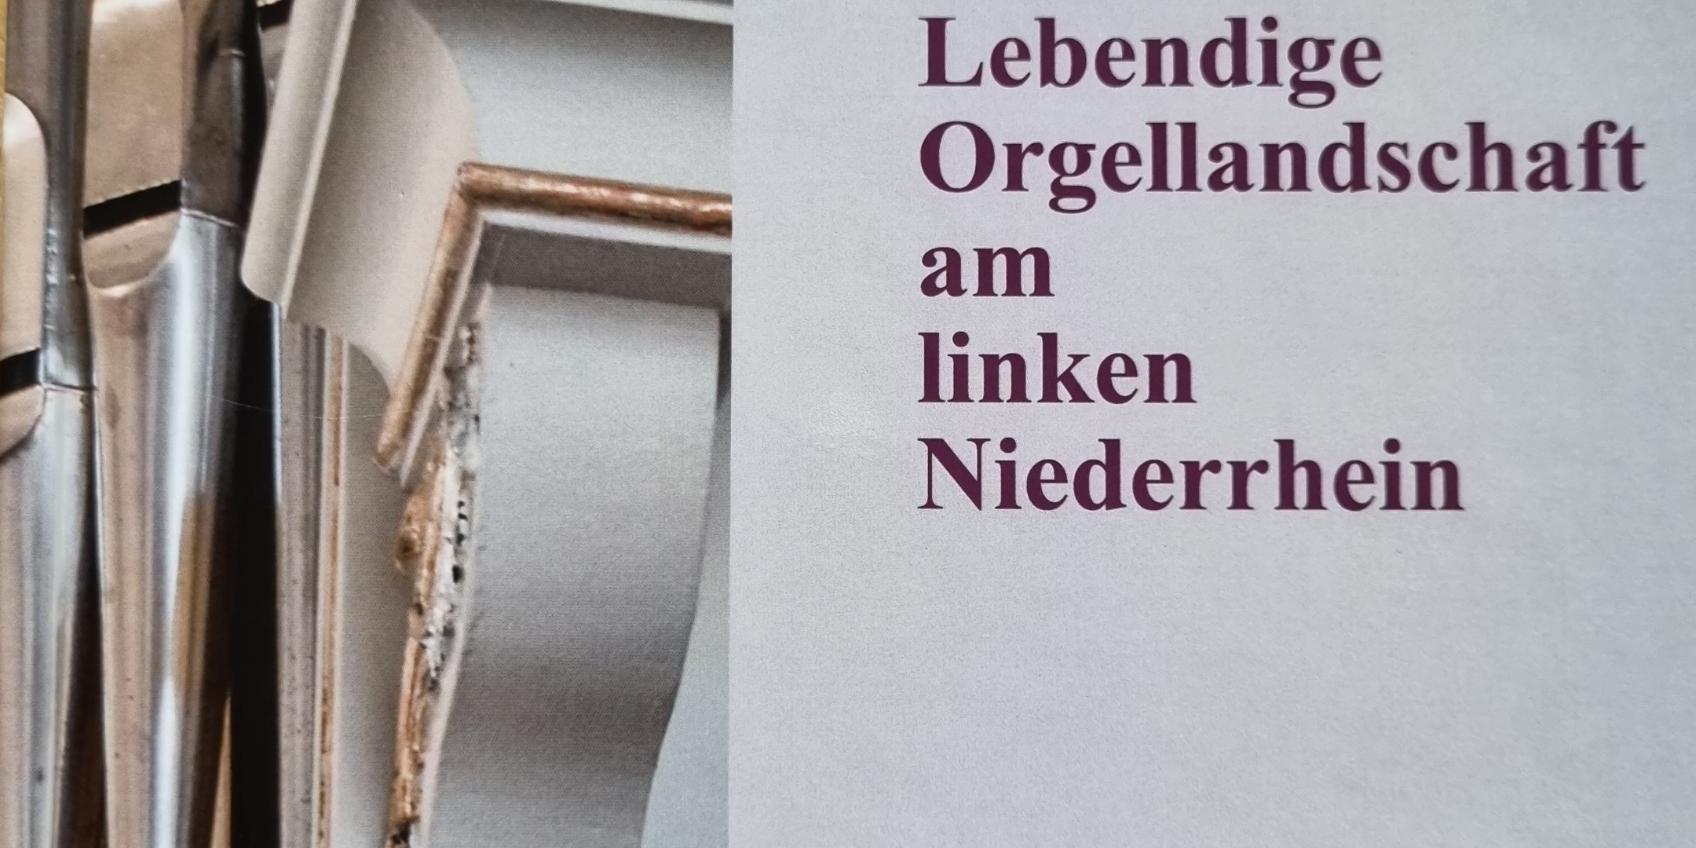 das Buch ‚Lebendige Orgellandschaft am linken Niederrhein‘ (c) privat